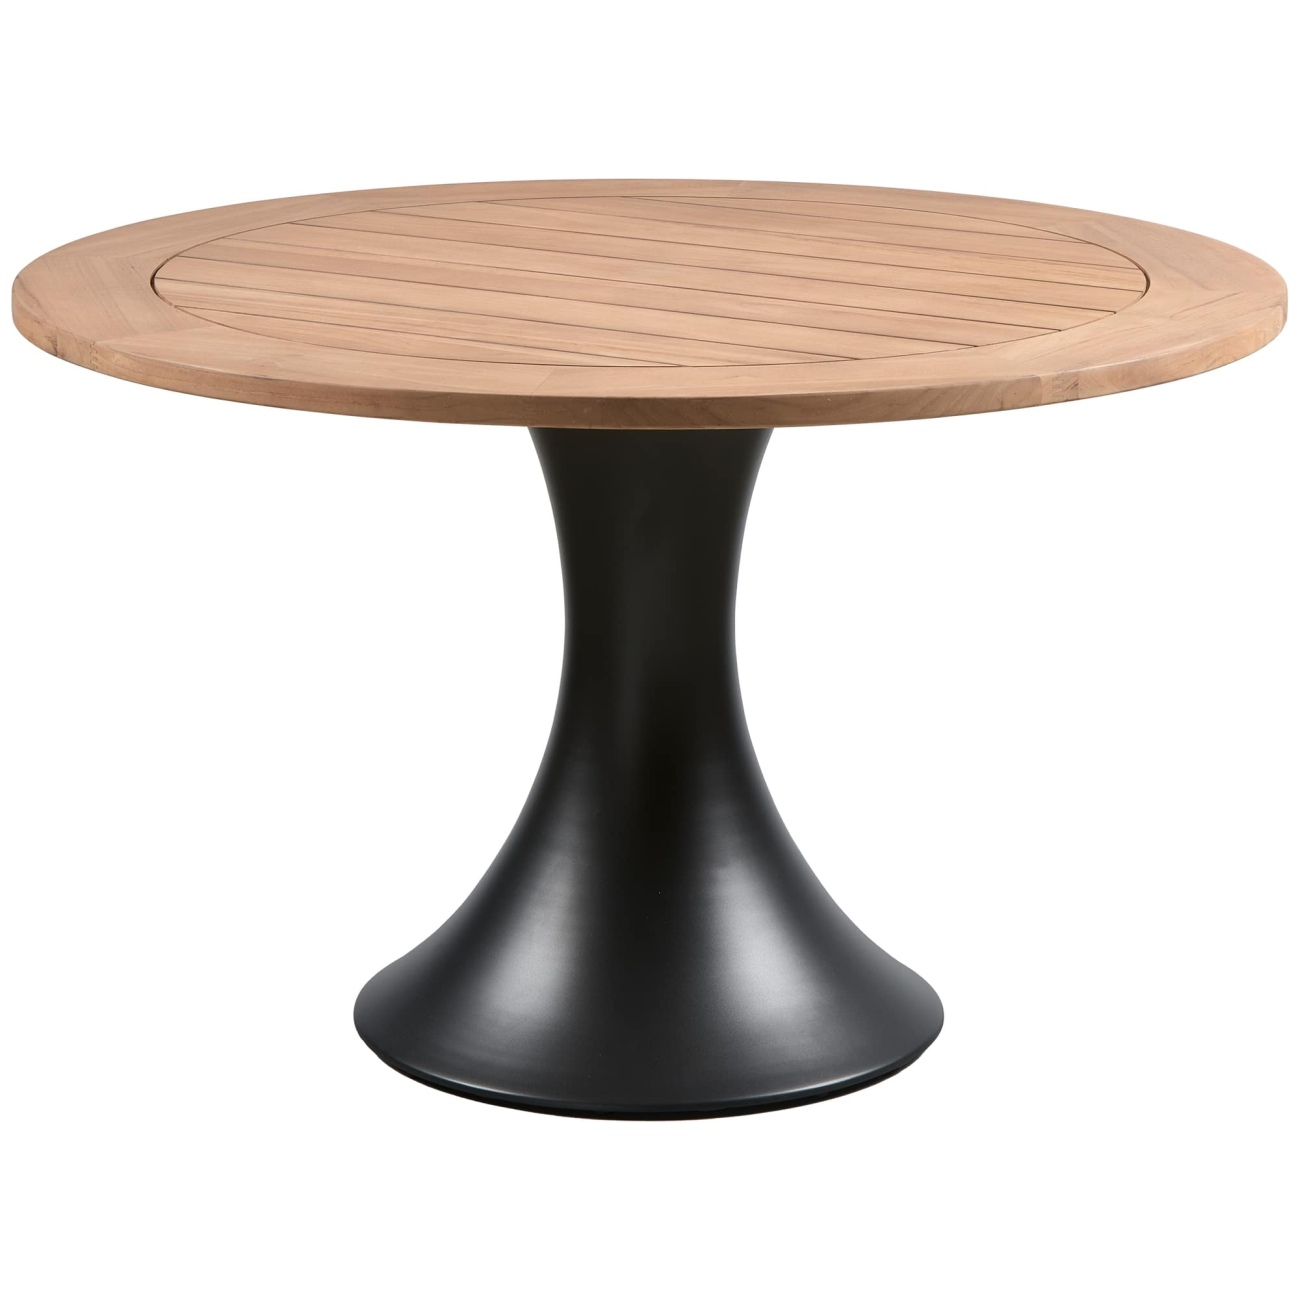 Der Gartenesstisch Charley überzeugt mit seinem modernen Design. Gefertigt wurde er aus Teakholz, welcher einen natürlichen Farbton besitzt. Das Gestell ist aus Aluminium und hat eine schwarze Farbe. Der Tisch besitzt einen Durchmesser von 122 cm.